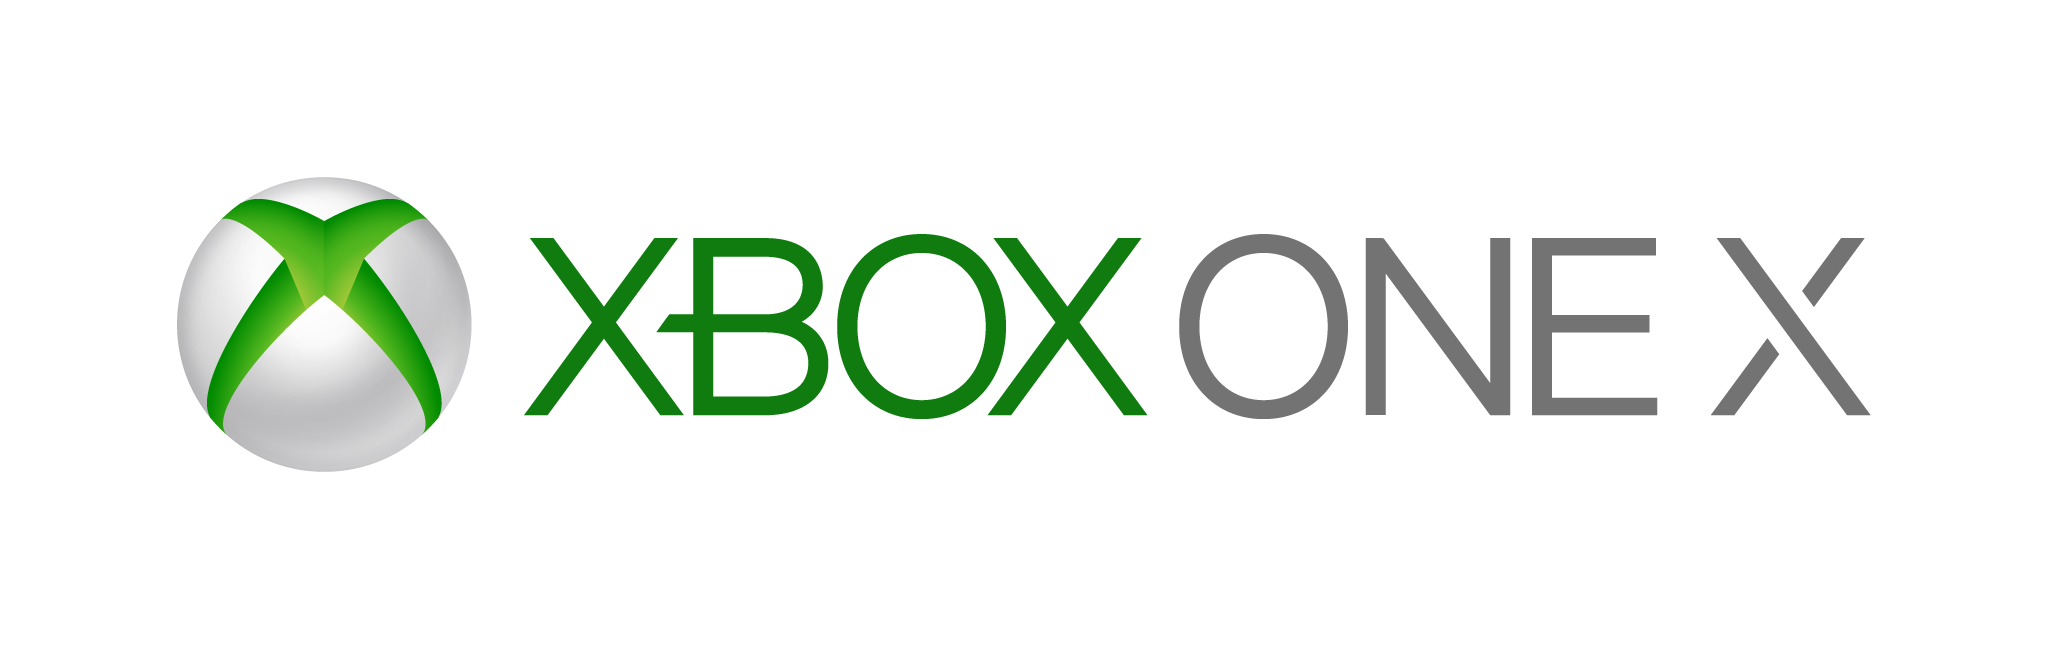 green xbox 360 logo